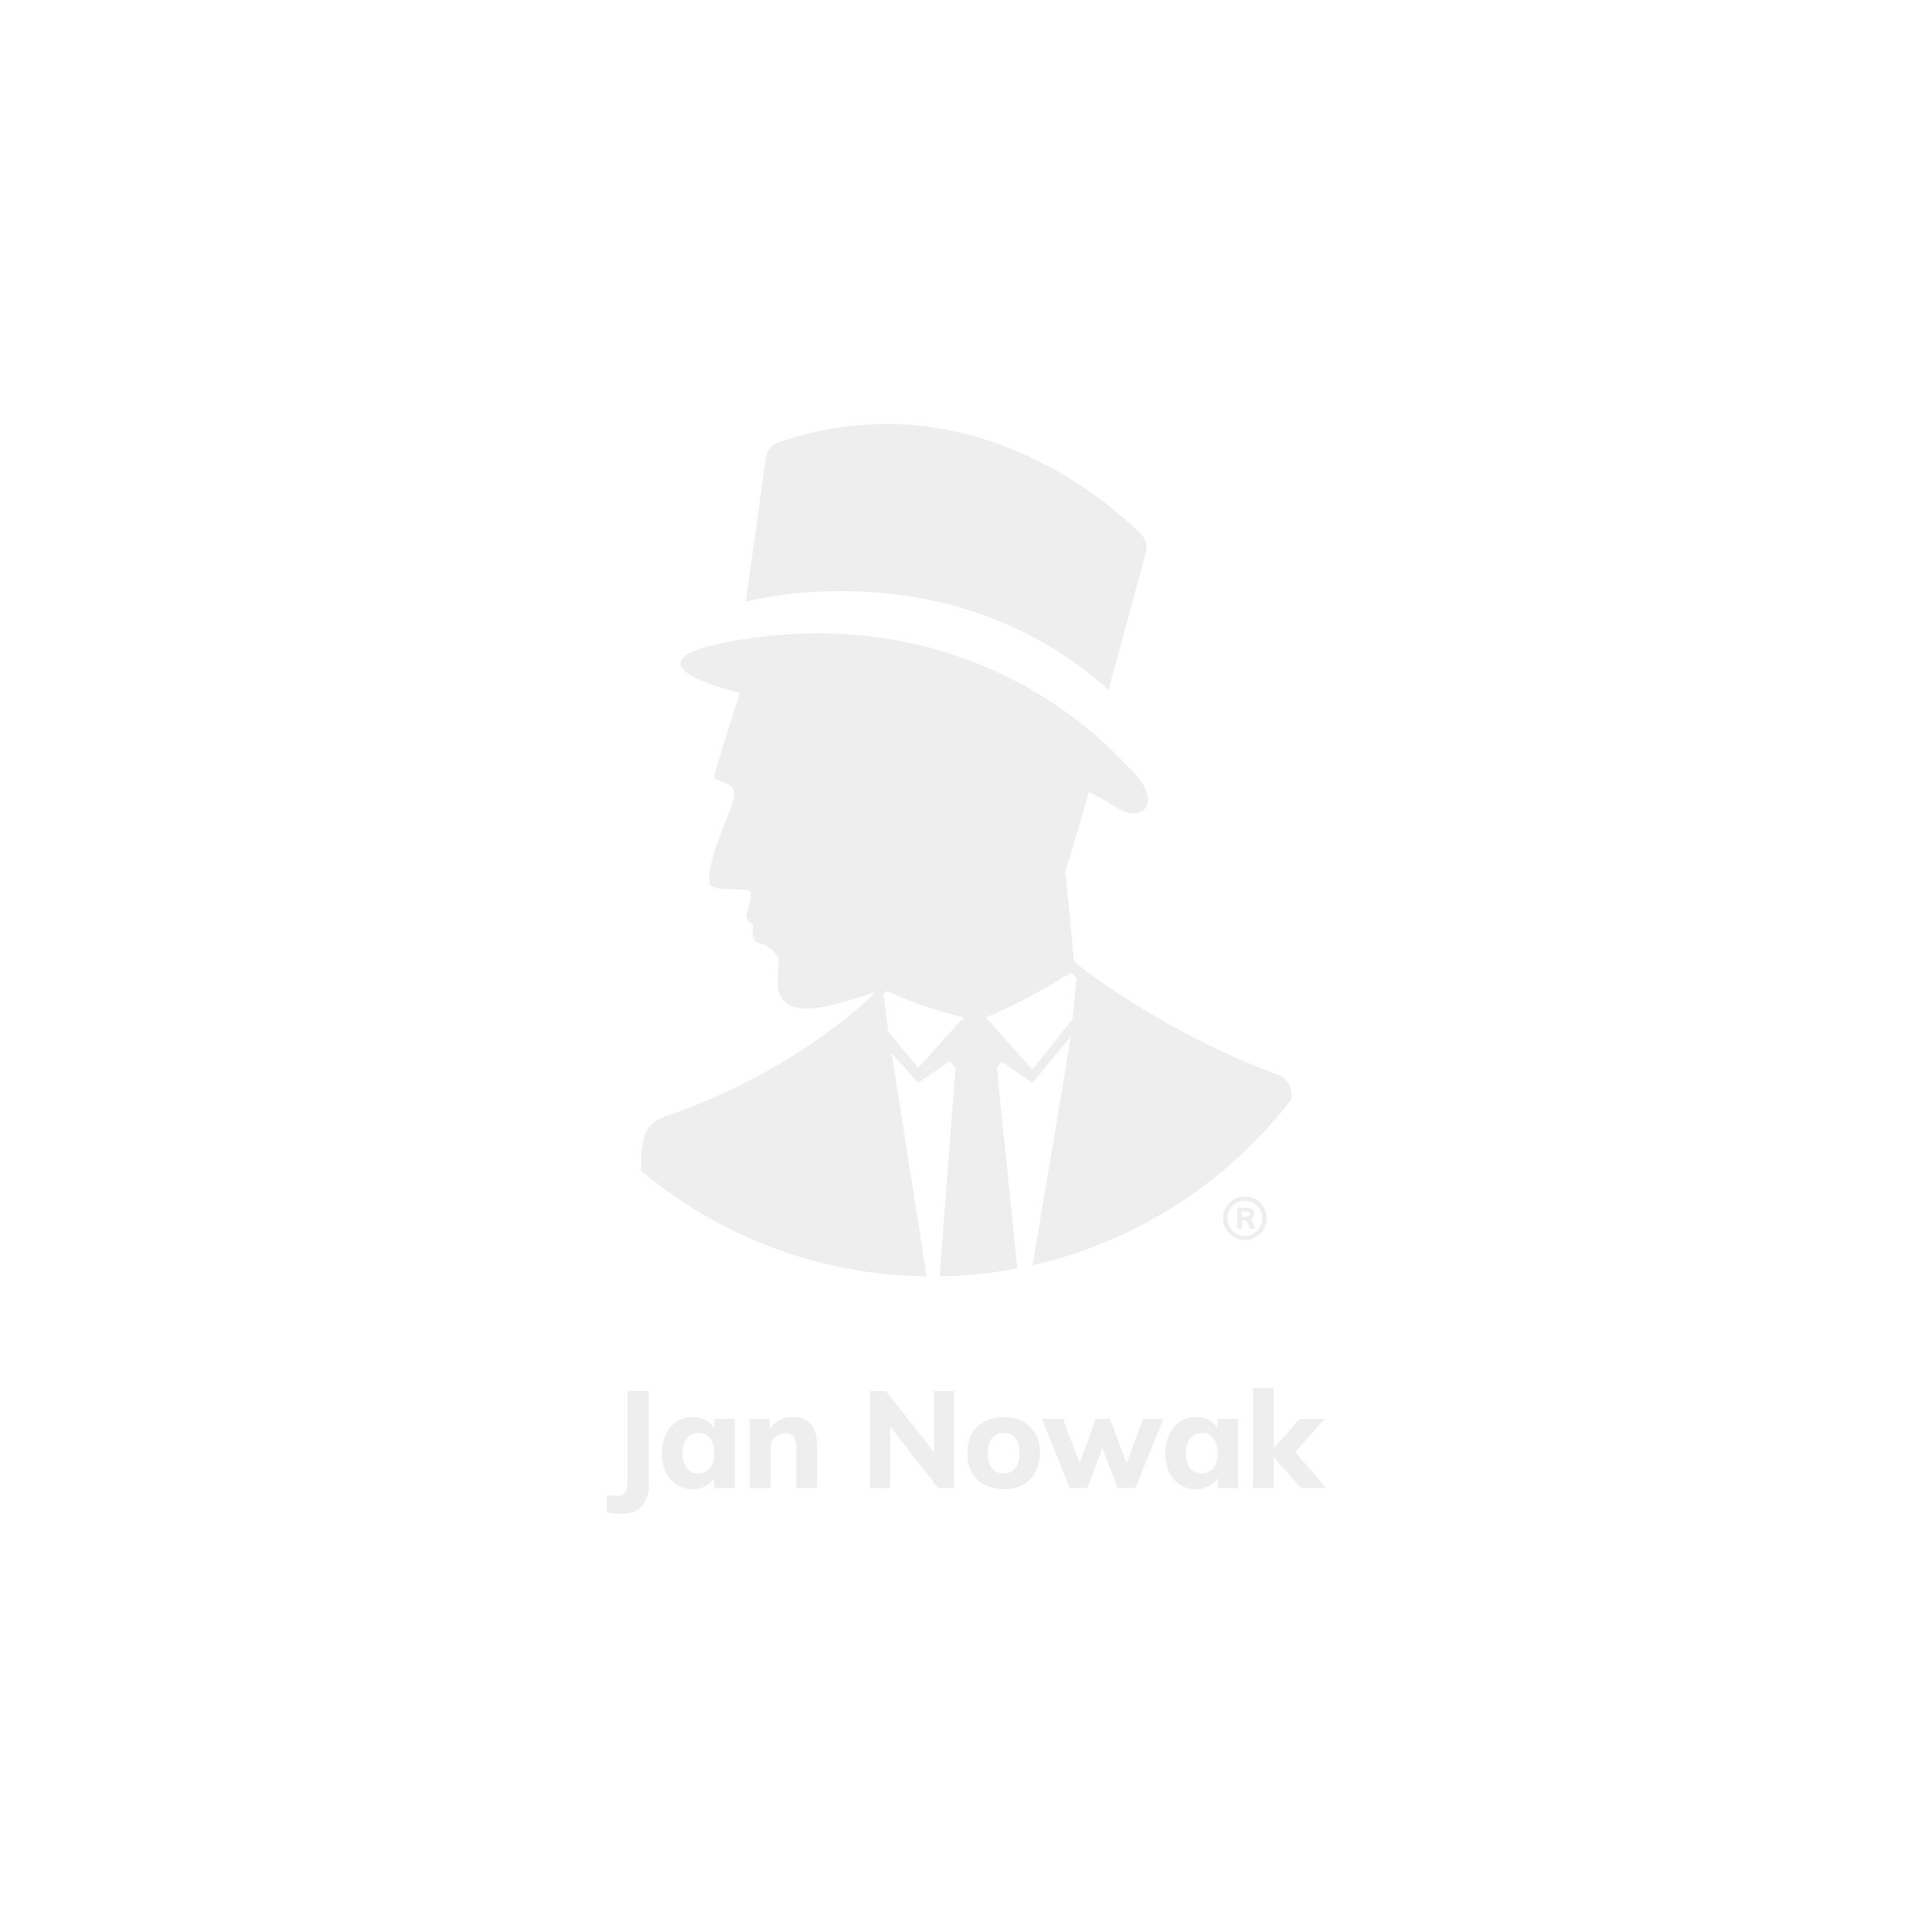 JAN NOWAK model EWA 900x380x400 biurowa nadstawka do szafy szaro-niebieska